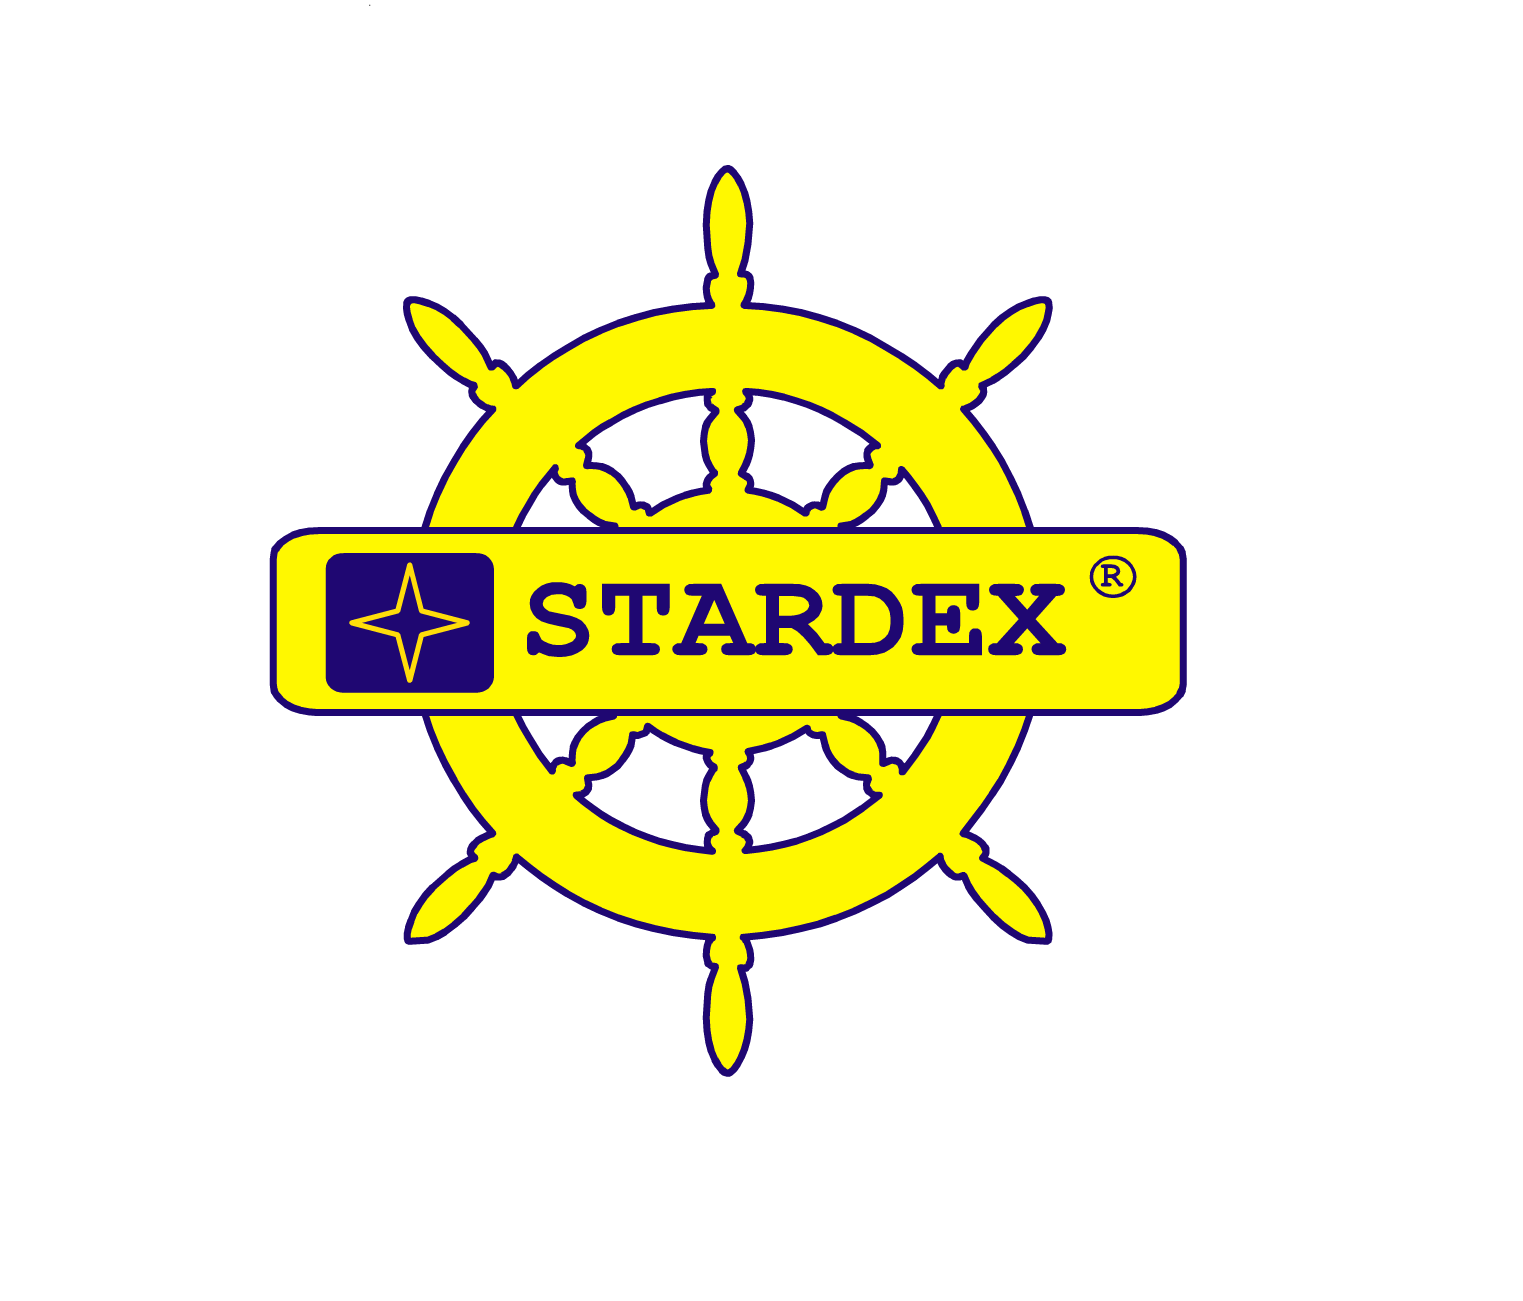 Stardex Common Rail diesel test equipment